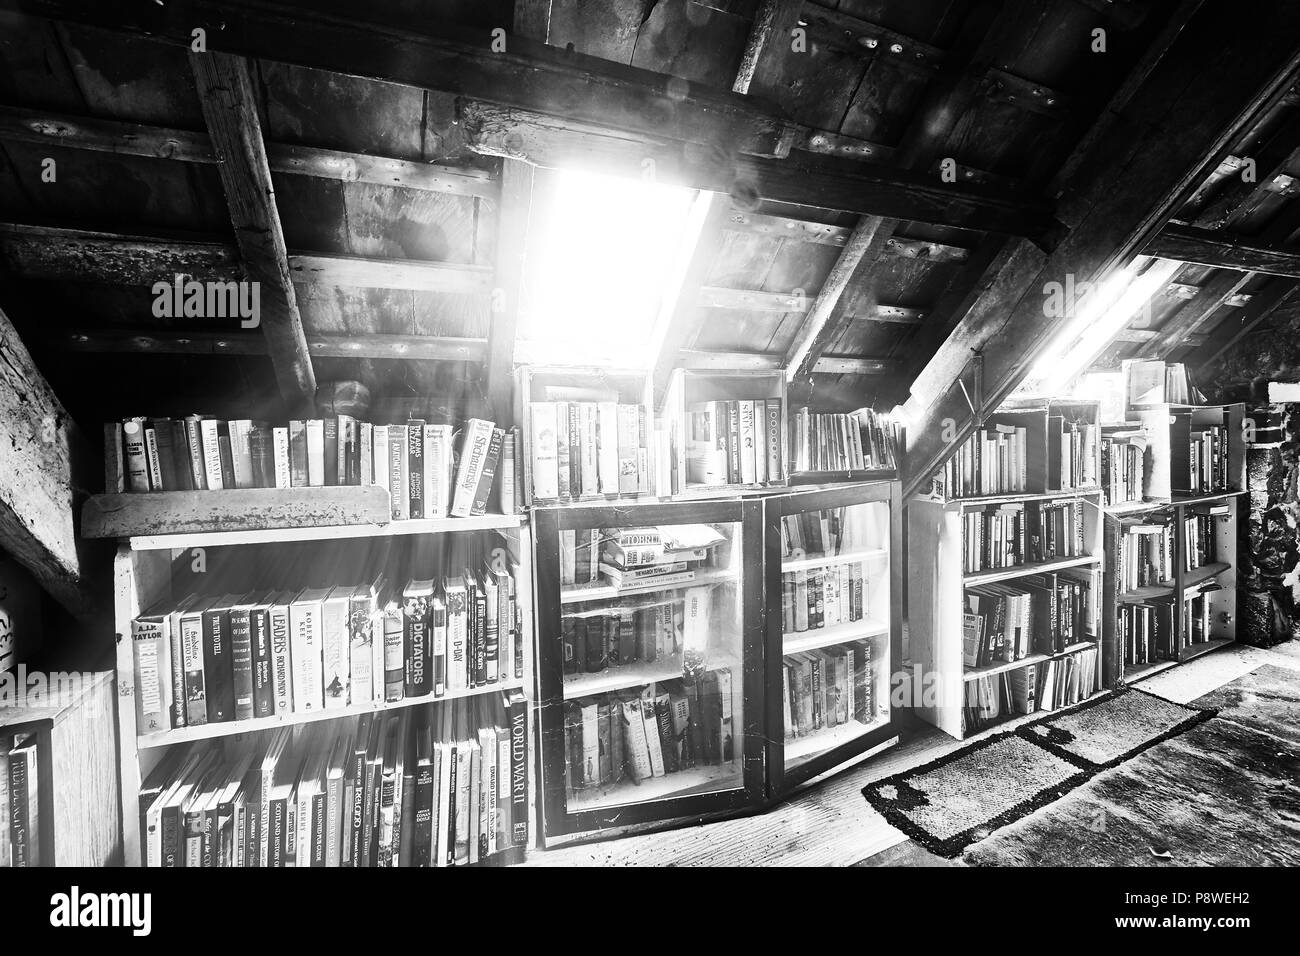 Interior de una casa de granja, granja interior de una casa, habitación ático rincón de lectura bajo el sol de la ventana del techo, el desorden de los libros en los estantes (mono) Foto de stock